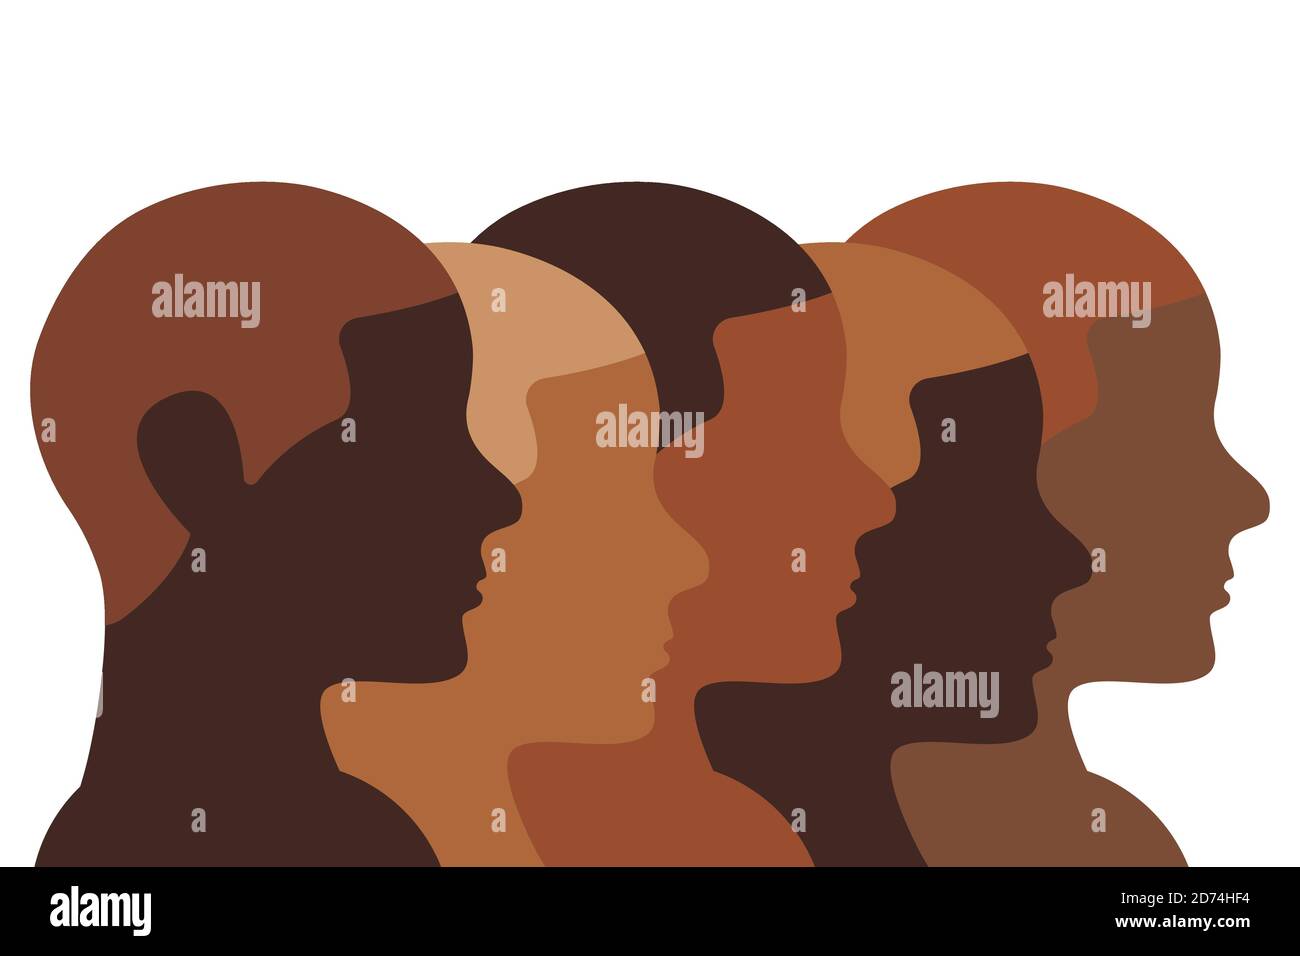 Illustration du peuple africain. Les profils de têtes humaines marron et noire montrent une diversité de la couleur de leur peau. Dessin au trait Illustration de Vecteur